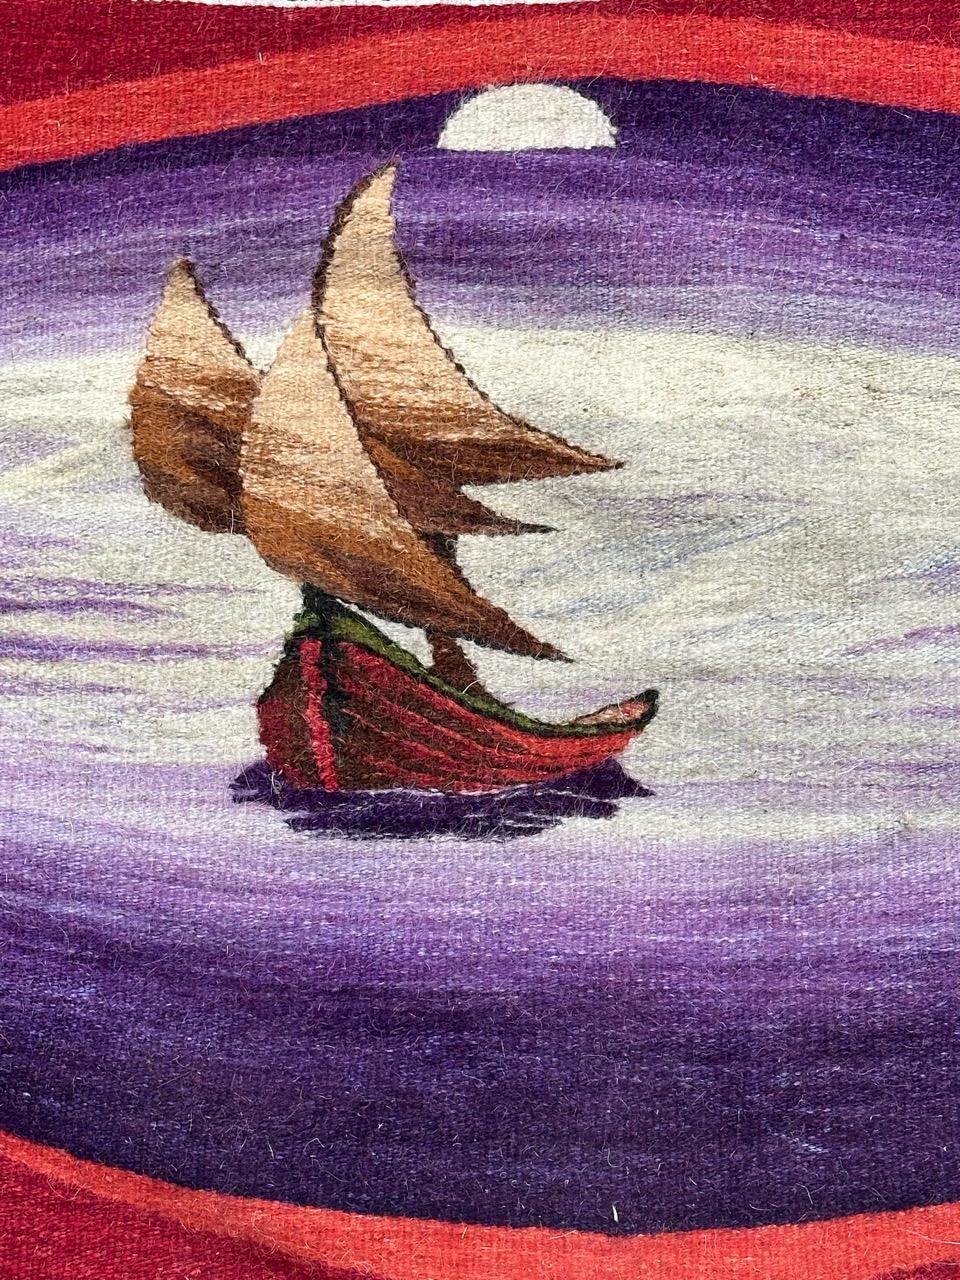 Très belle petite tapisserie moderne probablement européenne (artiste inconnu) avec un joli dessin représentant un bateau dans l'océan, avec la lune au-dessus,  aux belles couleurs, avec du violet, du marron, du beige, du rouge et du blanc,